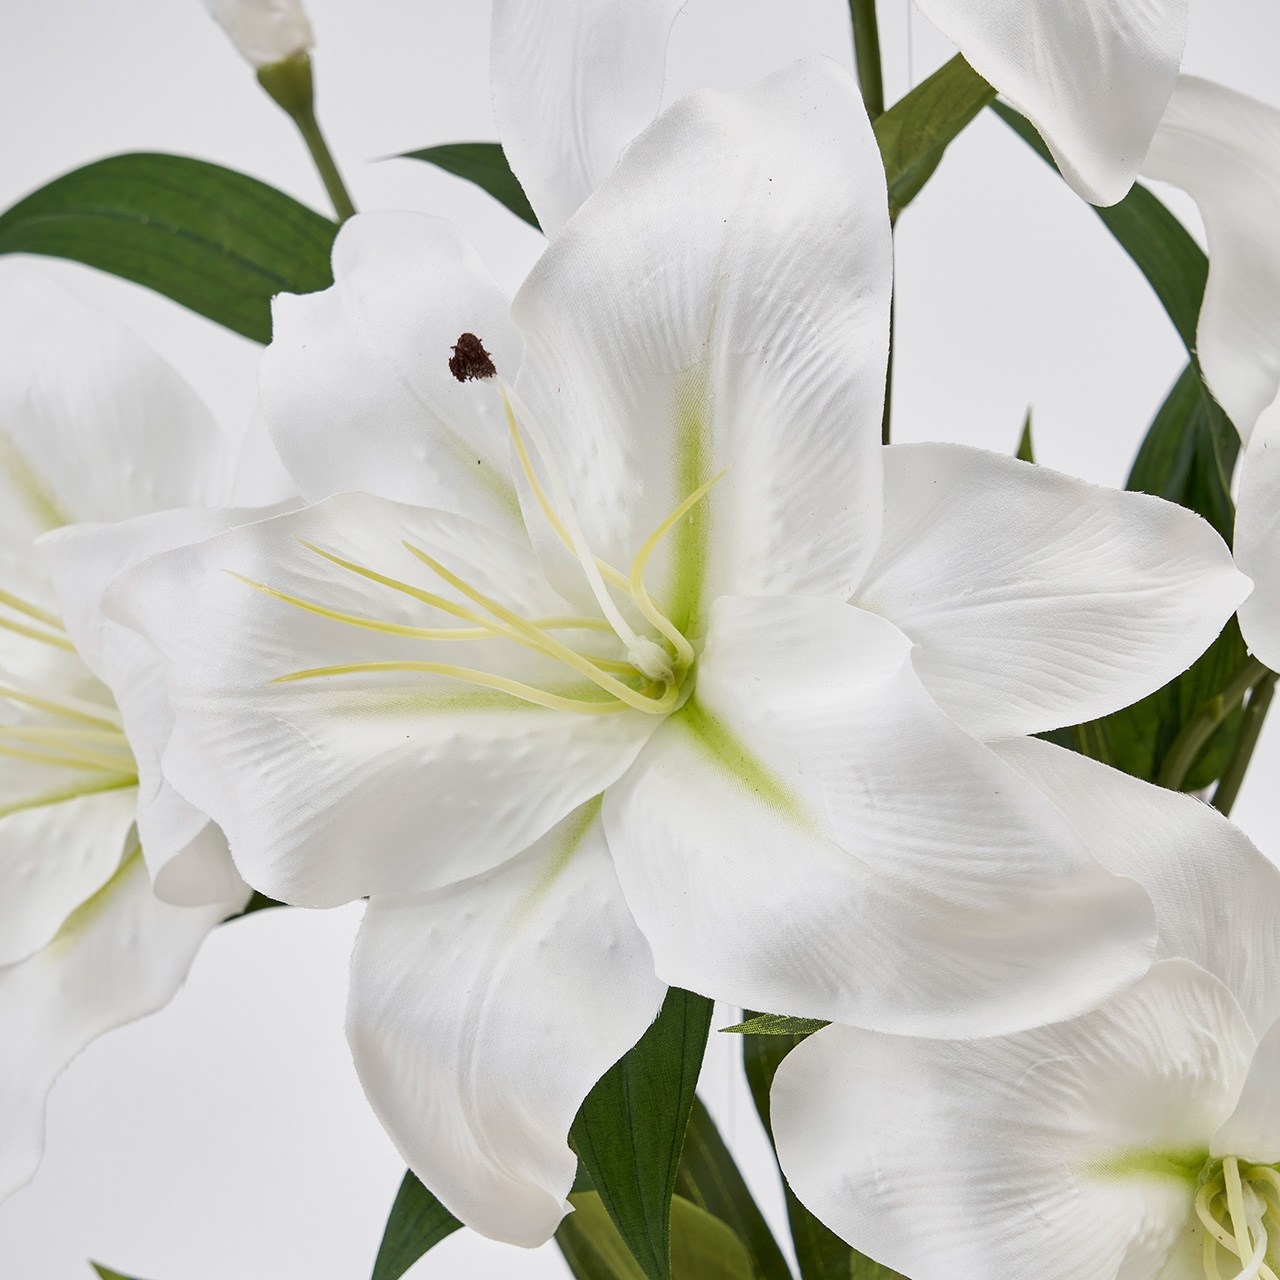 マイフラ 通販 Magiq サブリナカサブランカブッシュ ホワイト アーティフィシャルフラワー 造花 ゆり カサブランカ リリー Fm 花径 長さ 約58 幅 約40cm ホワイト Magiq アーティフィシャルフラワー 造花 全国にmagiq 花器 花資材などをお届けします